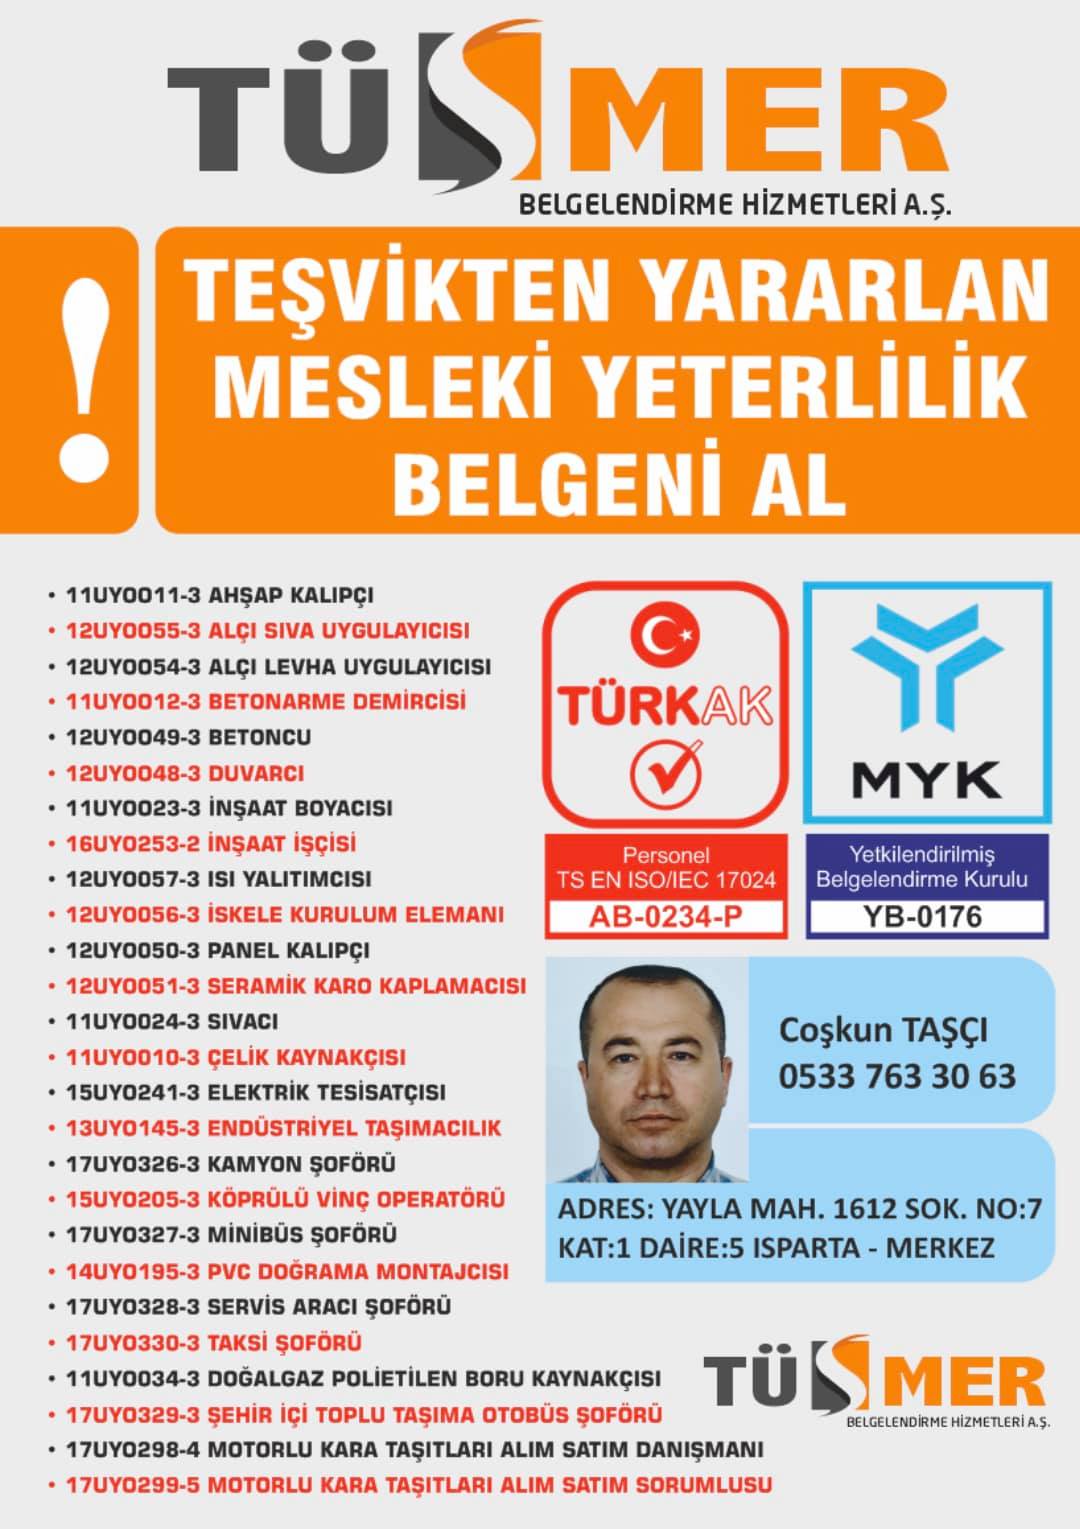 MYK MESLEKİ YETERLİLİK BELGESİ Acıbadem Kadıköy İstanbul